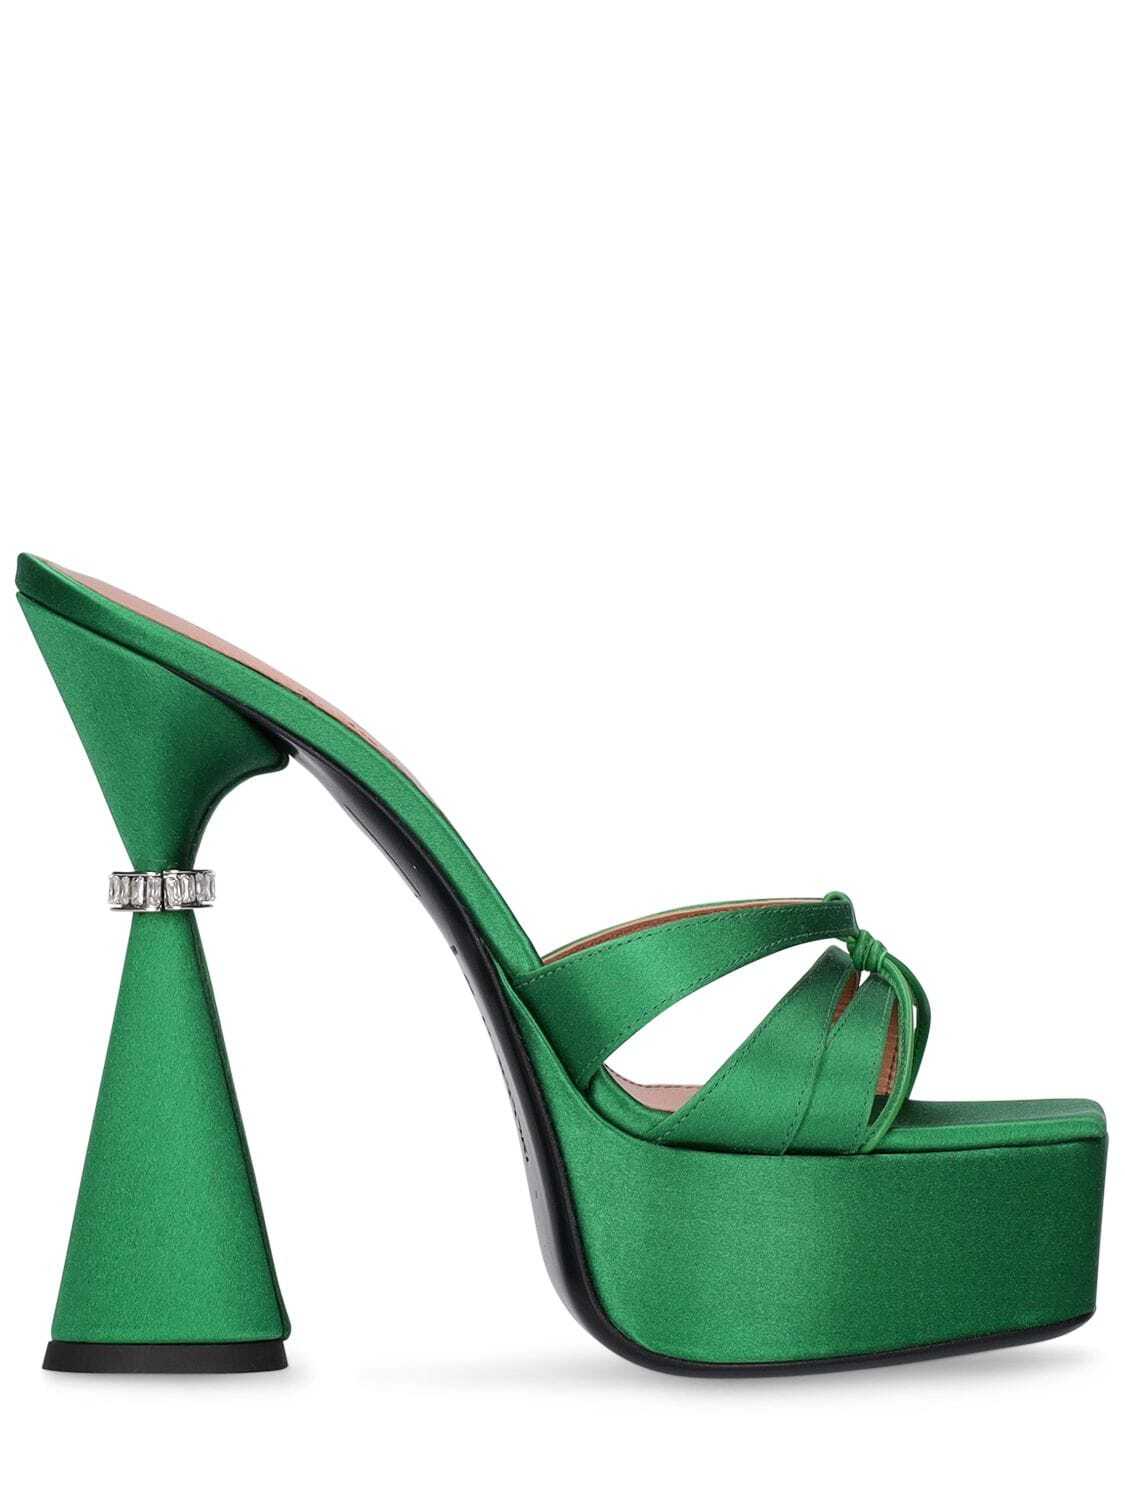 D'ACCORI 130mm Sienna Satin Mules in emerald